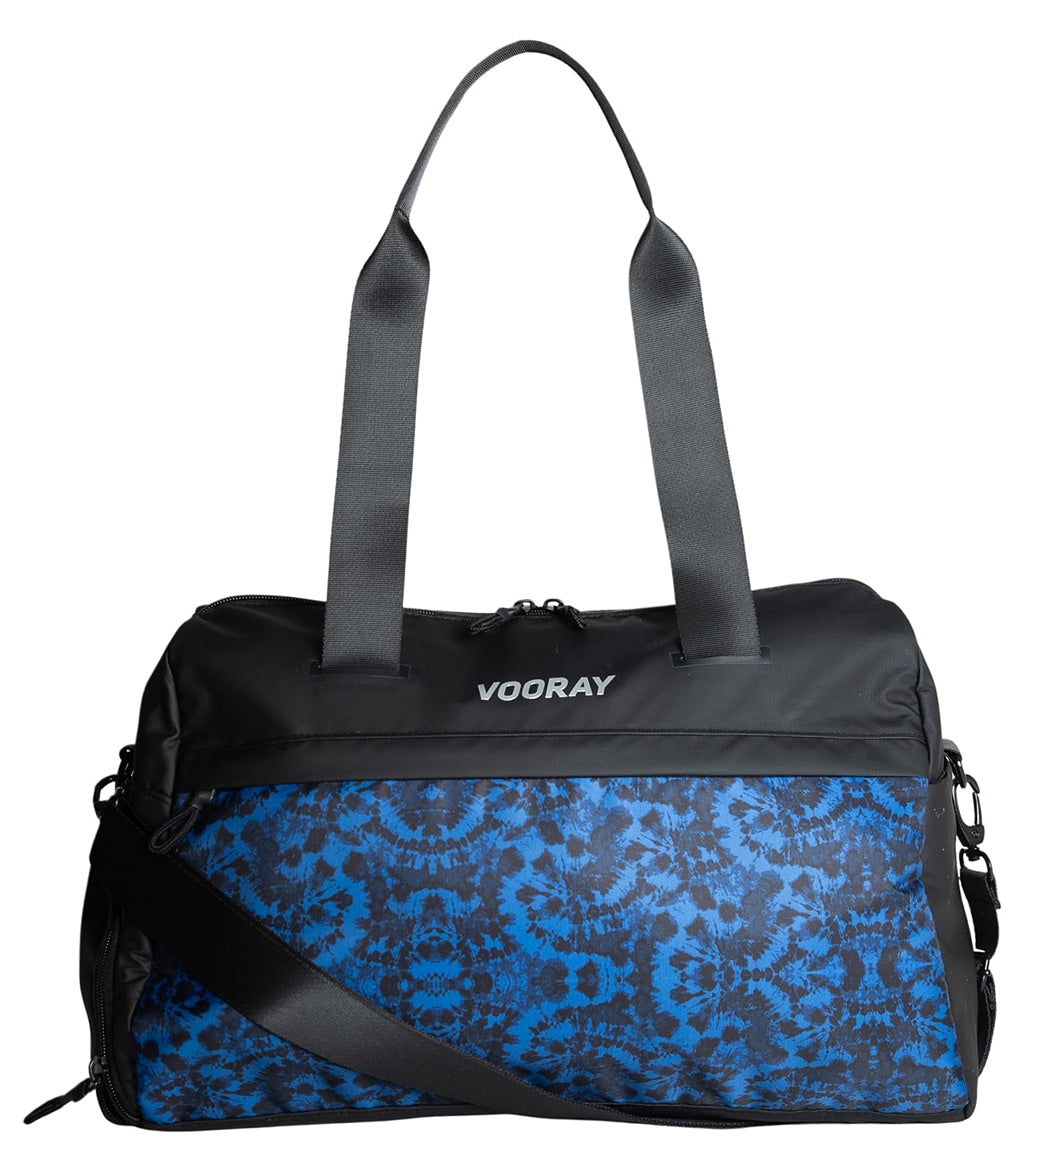 Yoga mat bag Vooray Avani Yoga Bag